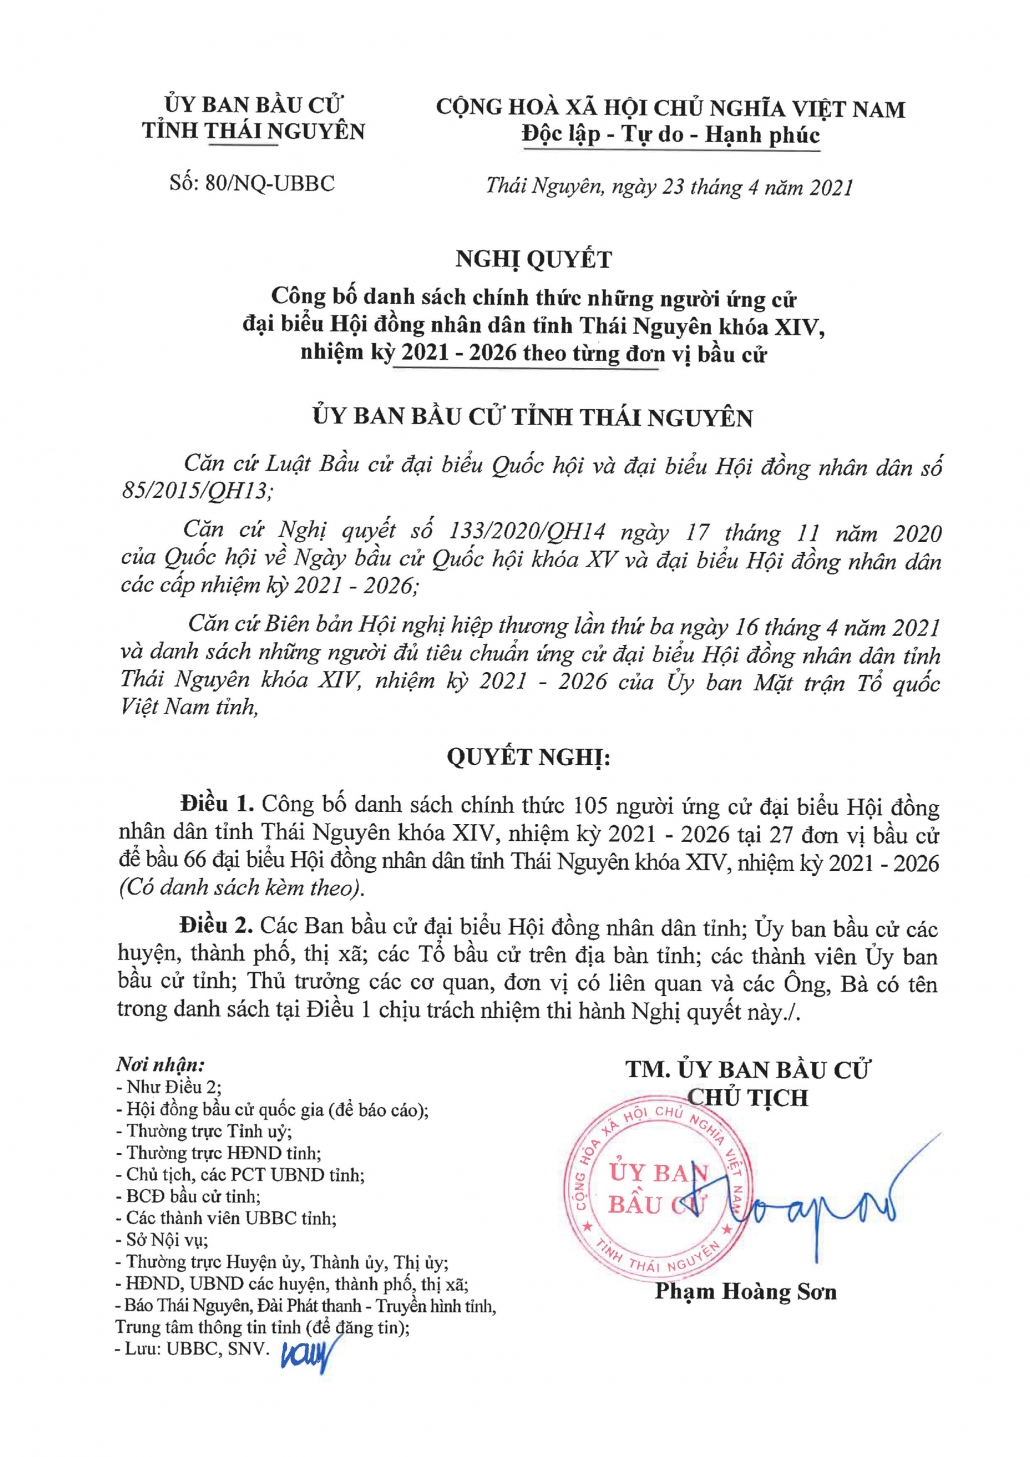 Công bố danh sách những người ứng cử đại biểu HĐND tỉnh Thái Nguyên khóa XIV, nhiệm kỳ 2021-2026